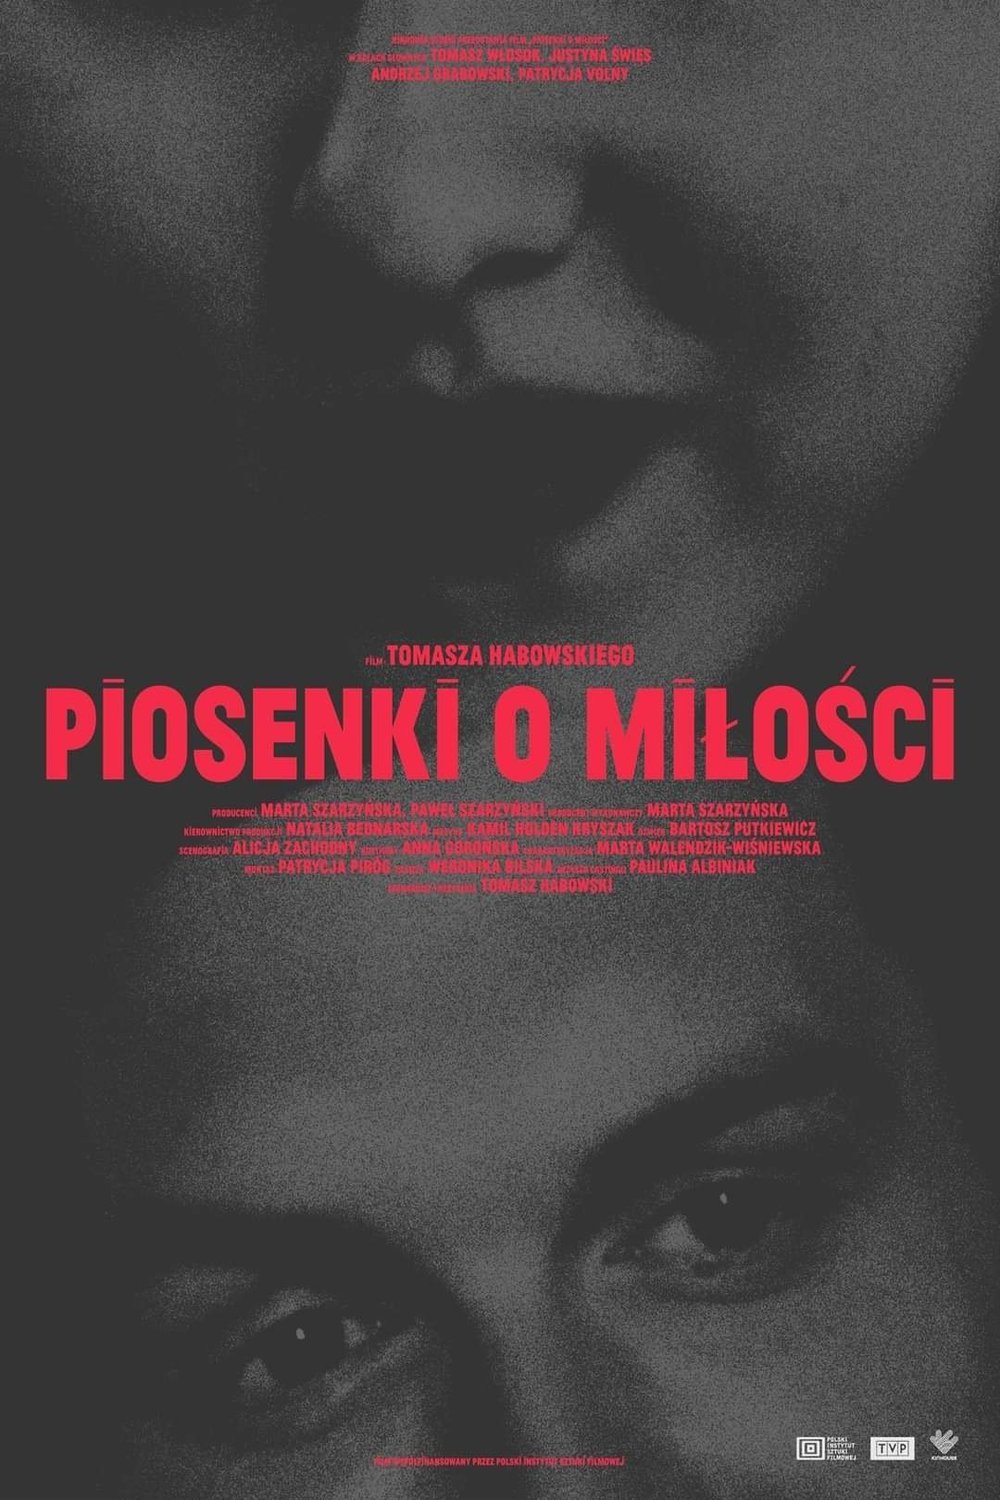 L'affiche originale du film Piosenki o milosci en polonais